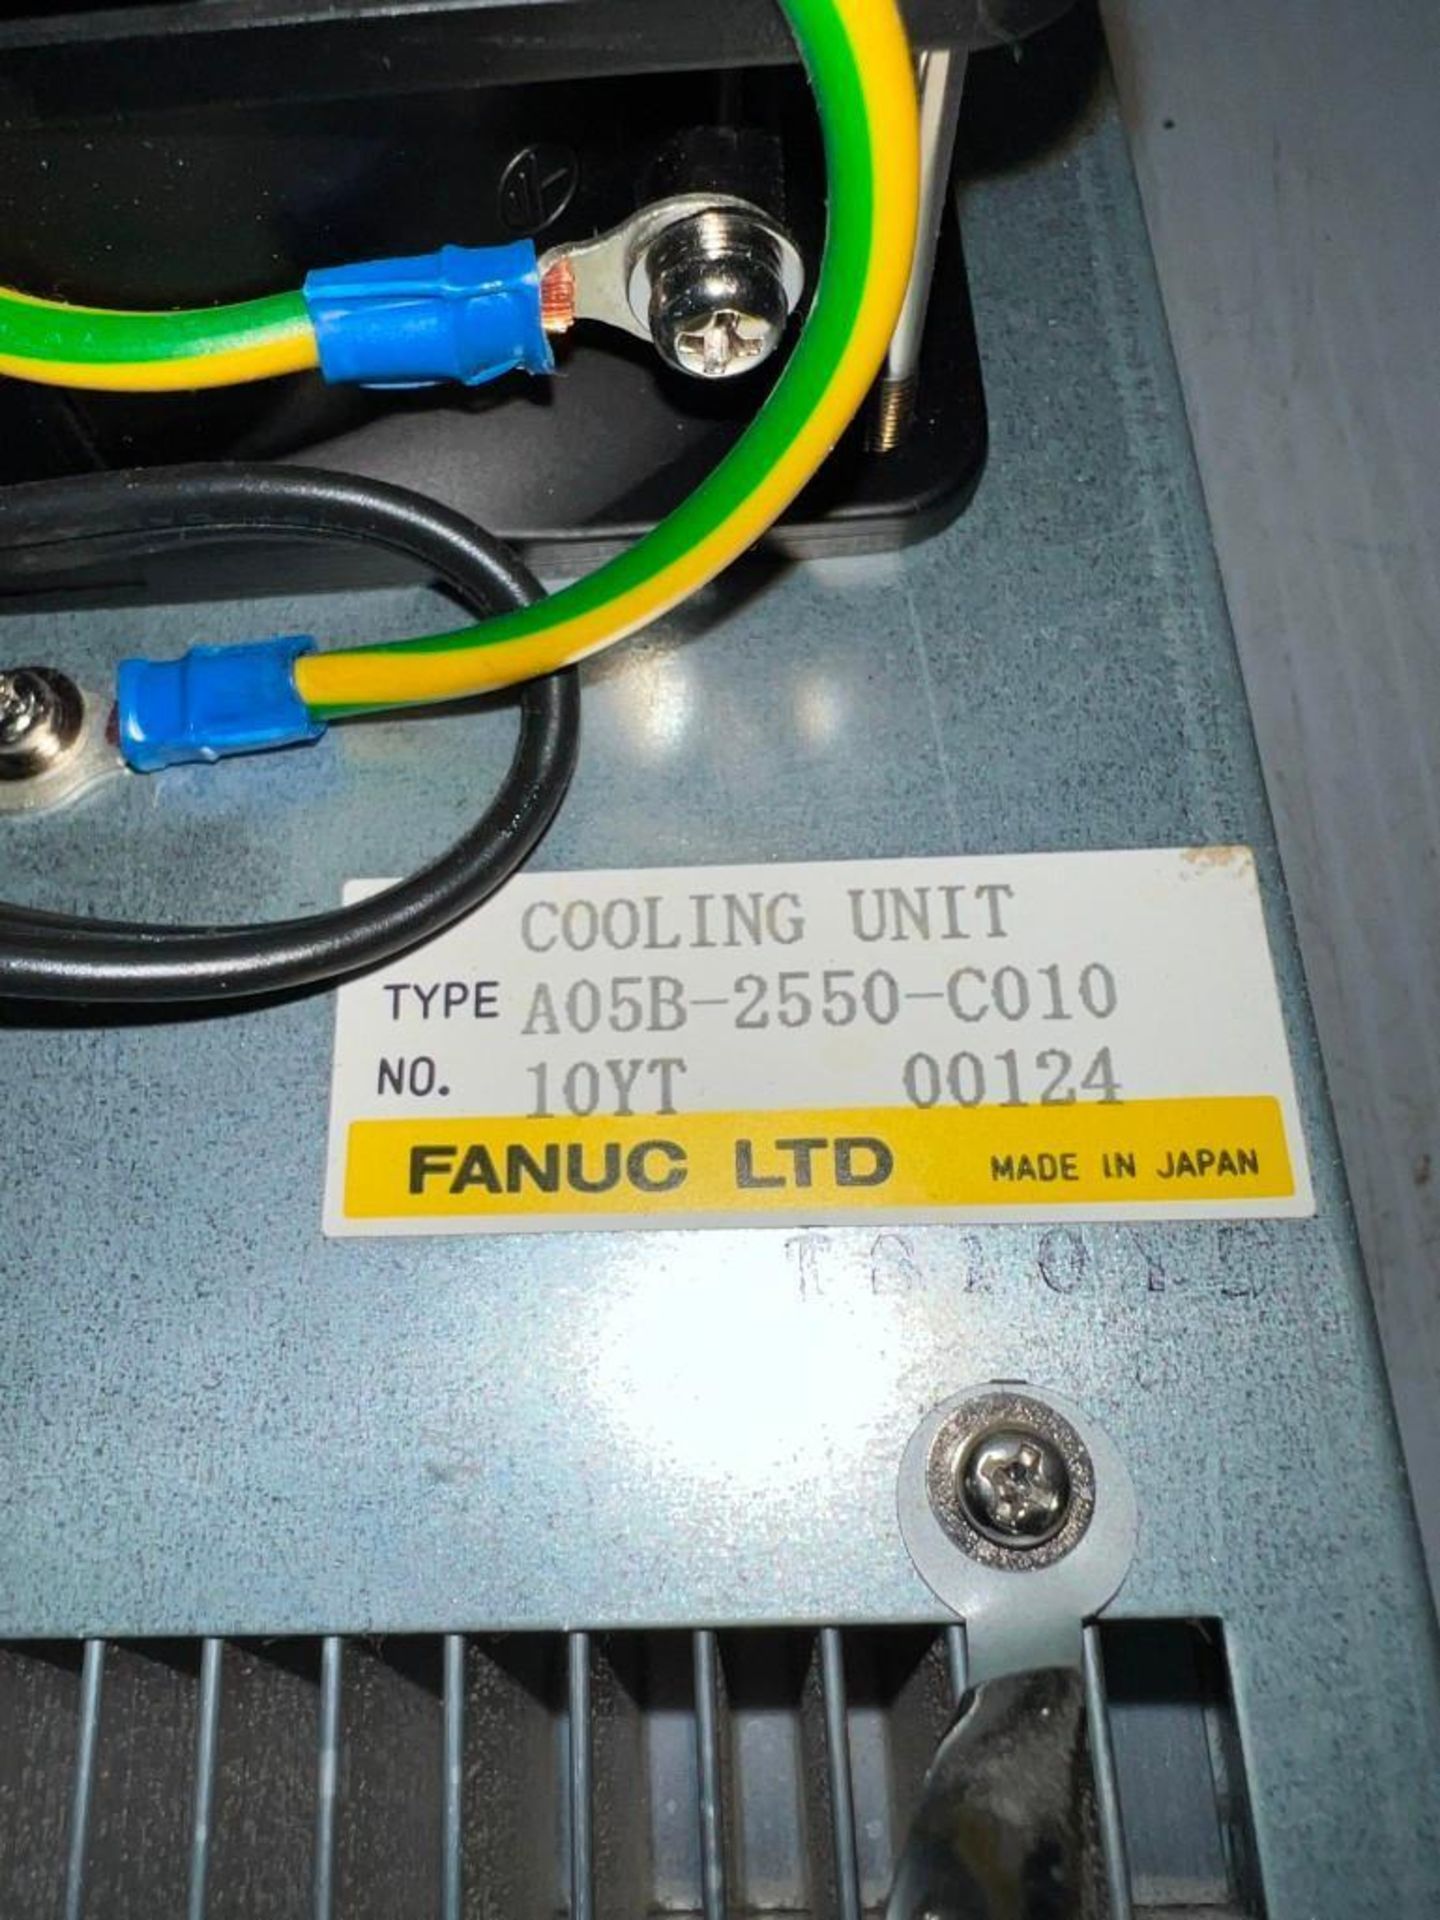 Fanuc #A05B-2550-C010 Cooling Unit - Image 2 of 2